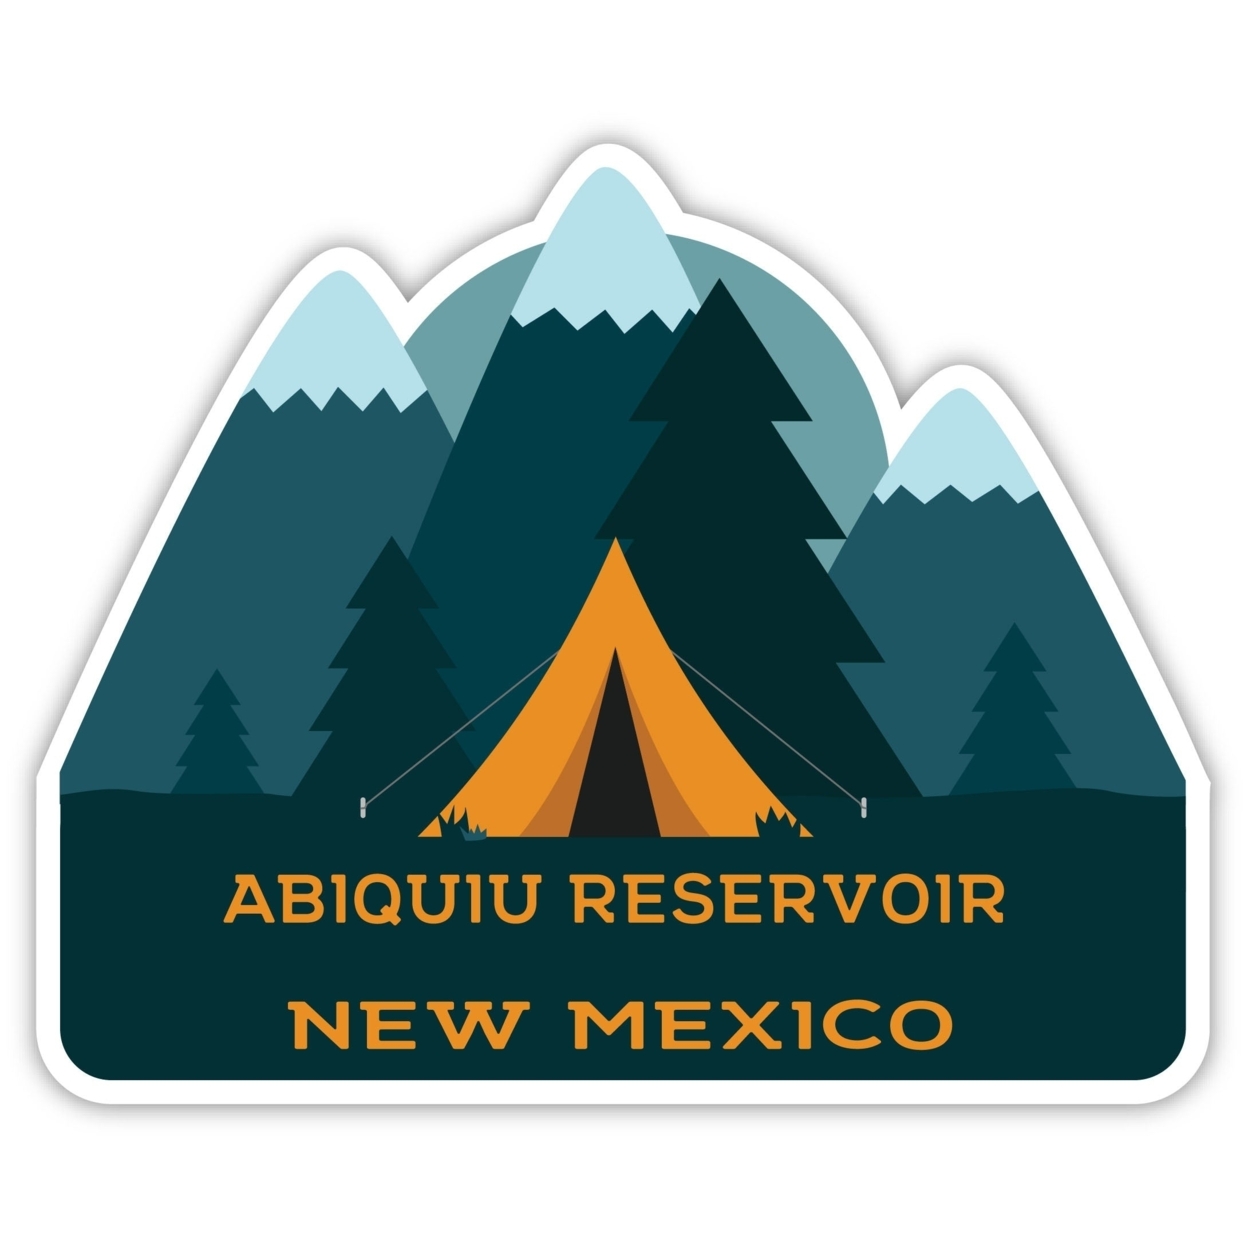 Abiquiu Reservoir New Mexico Souvenir Decorative Stickers (Choose Theme And Size) - Single Unit, 10-Inch, Tent